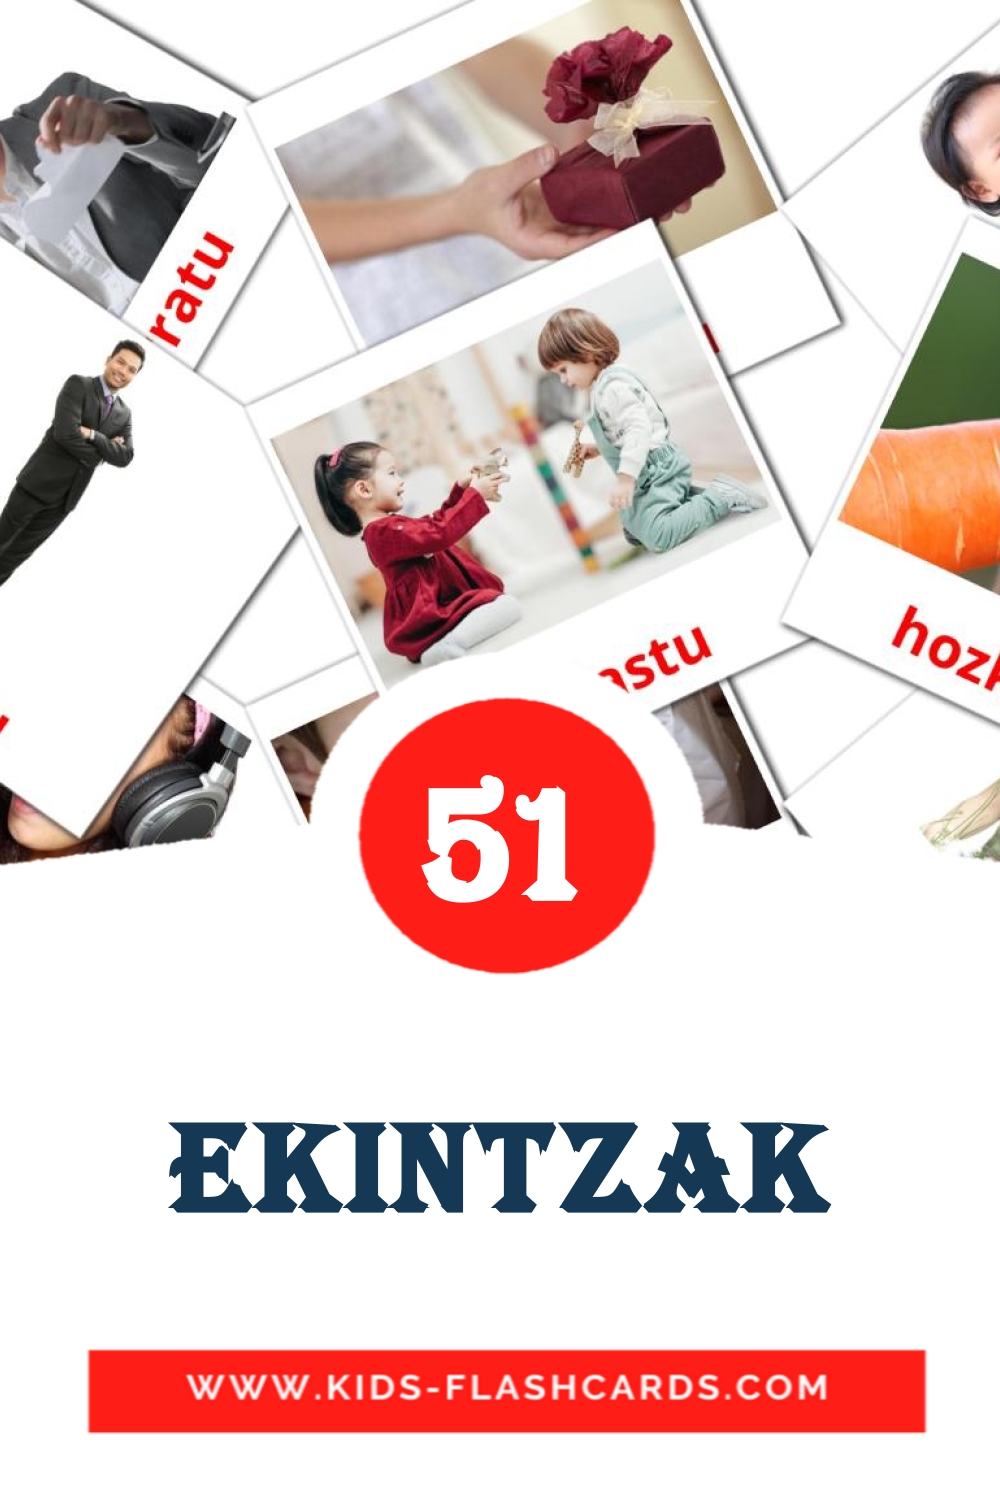 51 Ekintzak Bildkarten für den Kindergarten auf Baskische